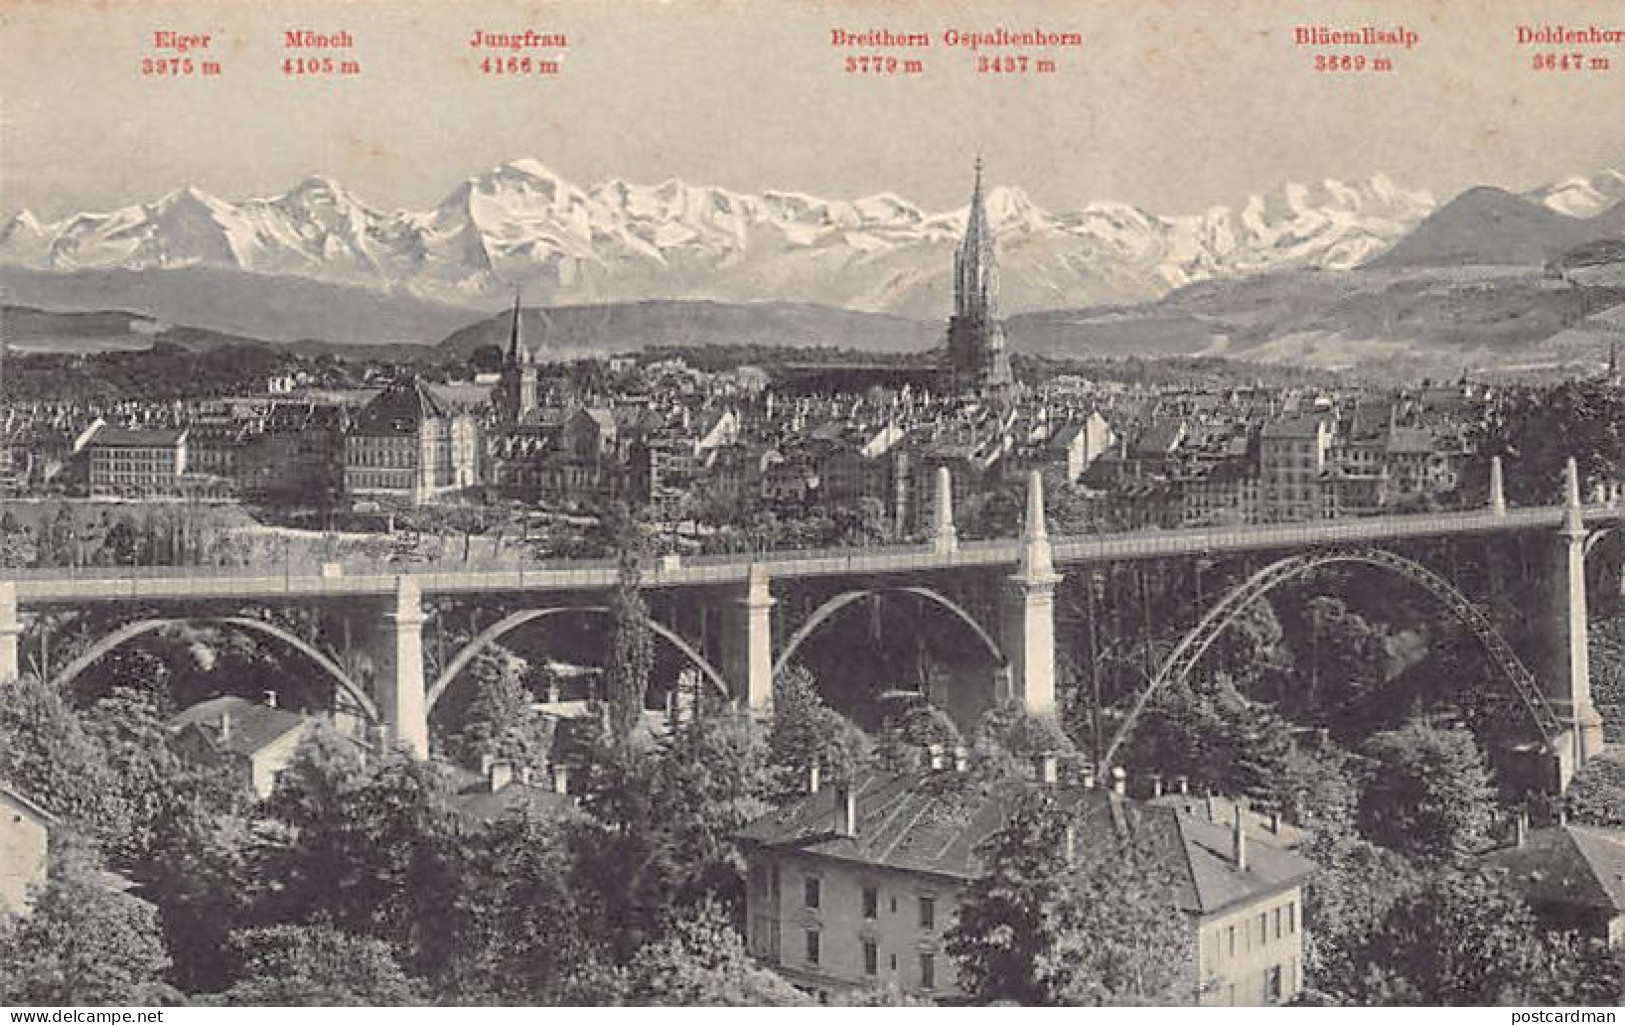 BERN - Und Die Alpen - Verlag Photoglob 253 - Berna